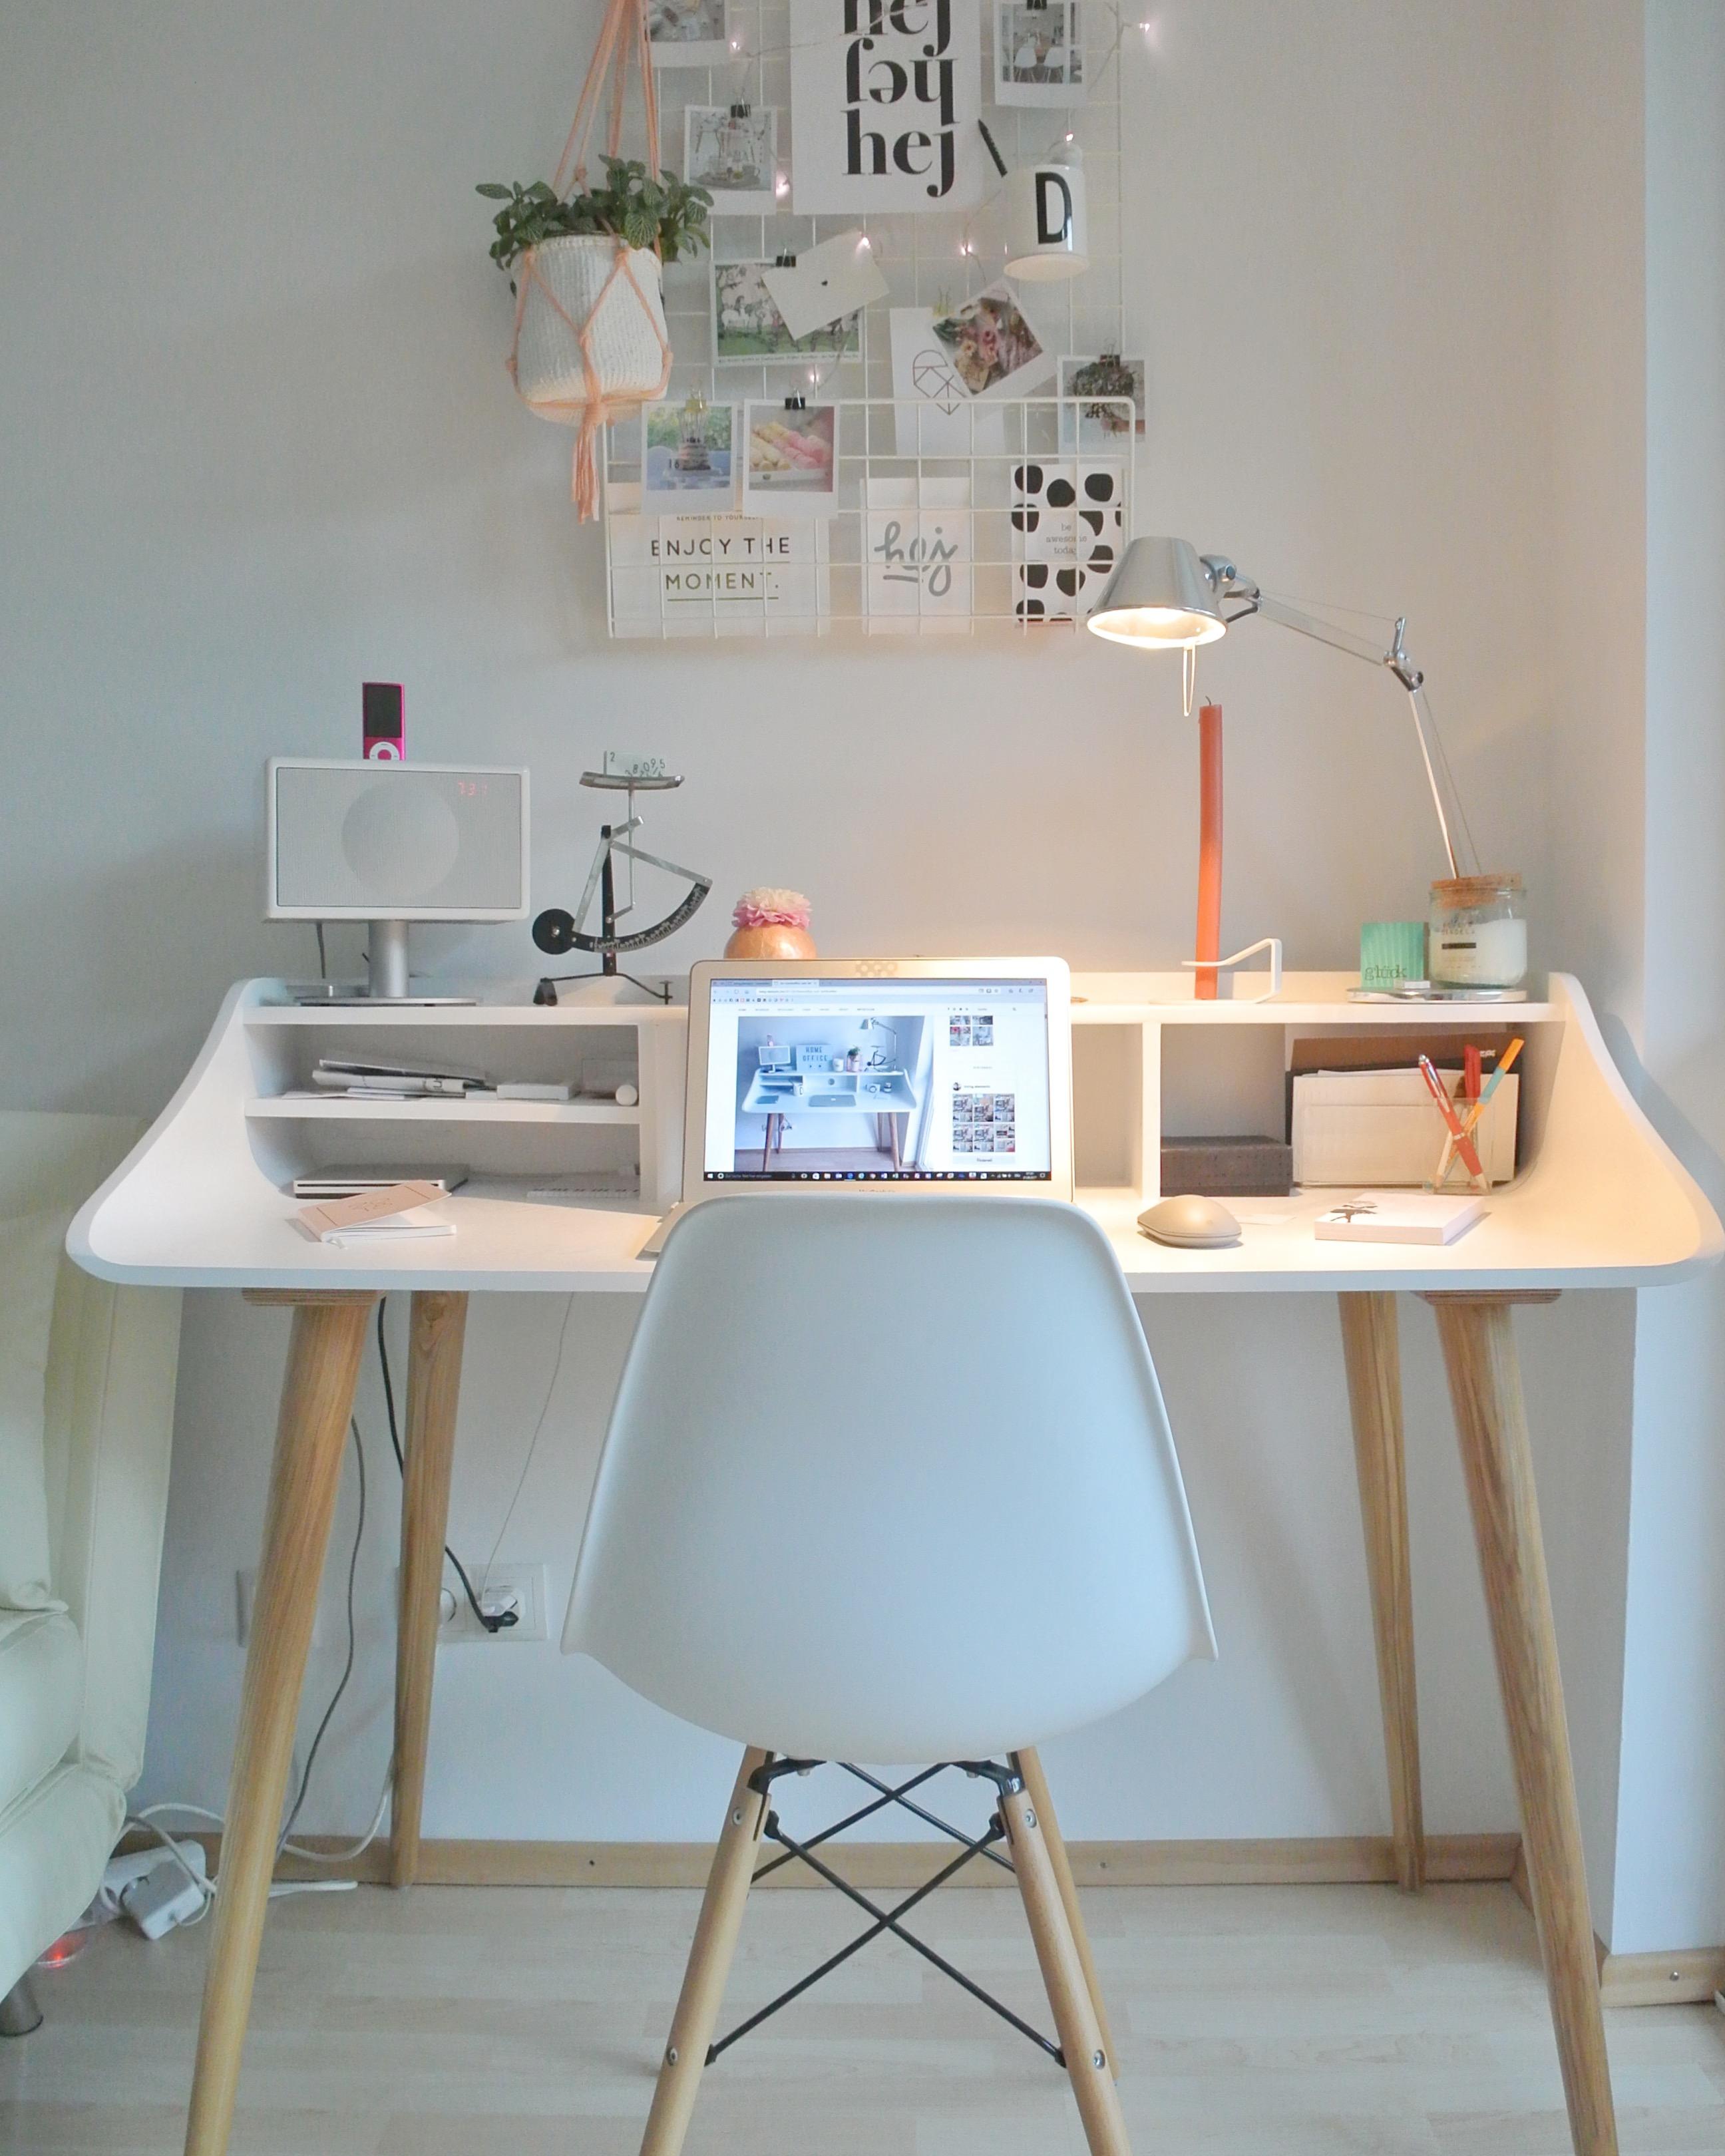 Schreibtisch im #skandistyle #schreibtisch #homeoffice #schreibtischstuhl #arbeitsplatz #couchdeskchallenge